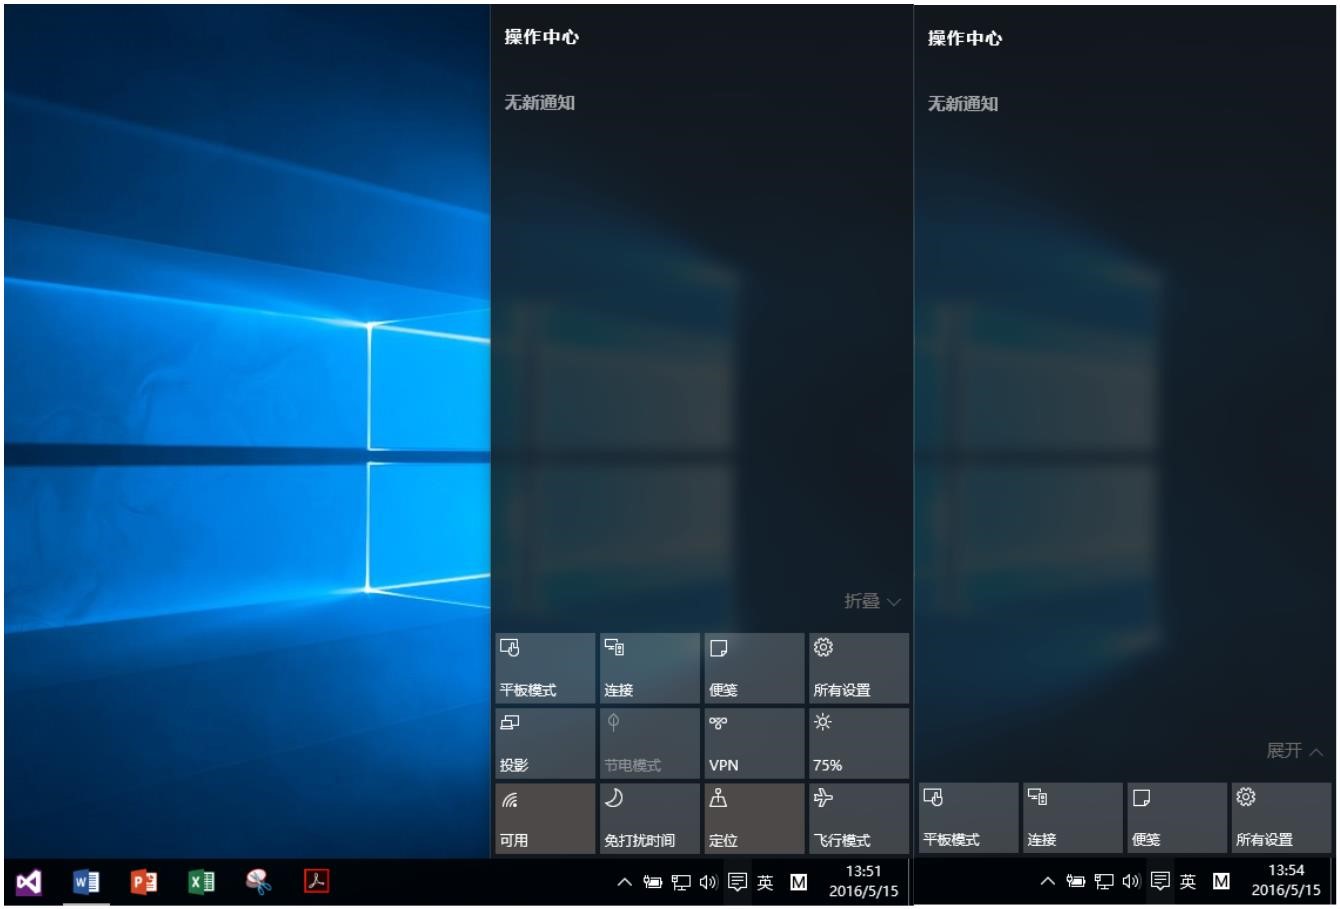 Windows10用户手册 - Windows 10 功能使用 - 操作中心